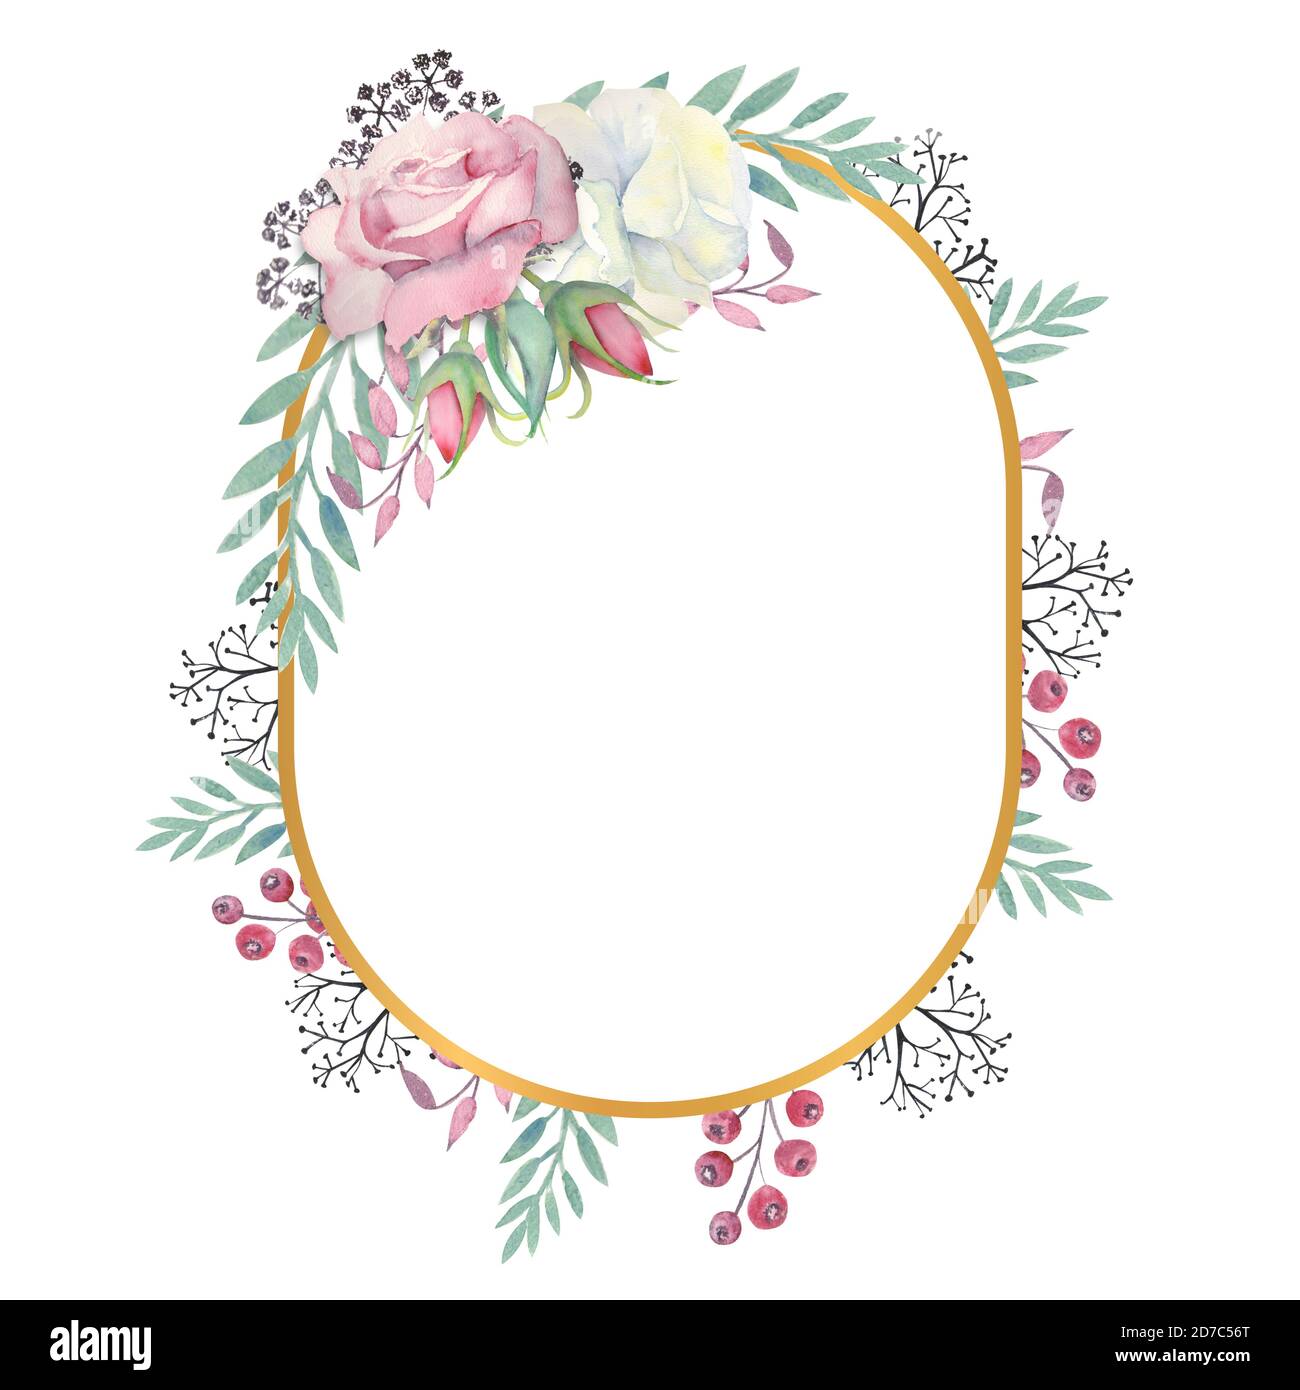 Fleurs roses blanches et roses, feuilles vertes, baies dans un cadre ovale  doré. Illustration aquarelle Photo Stock - Alamy